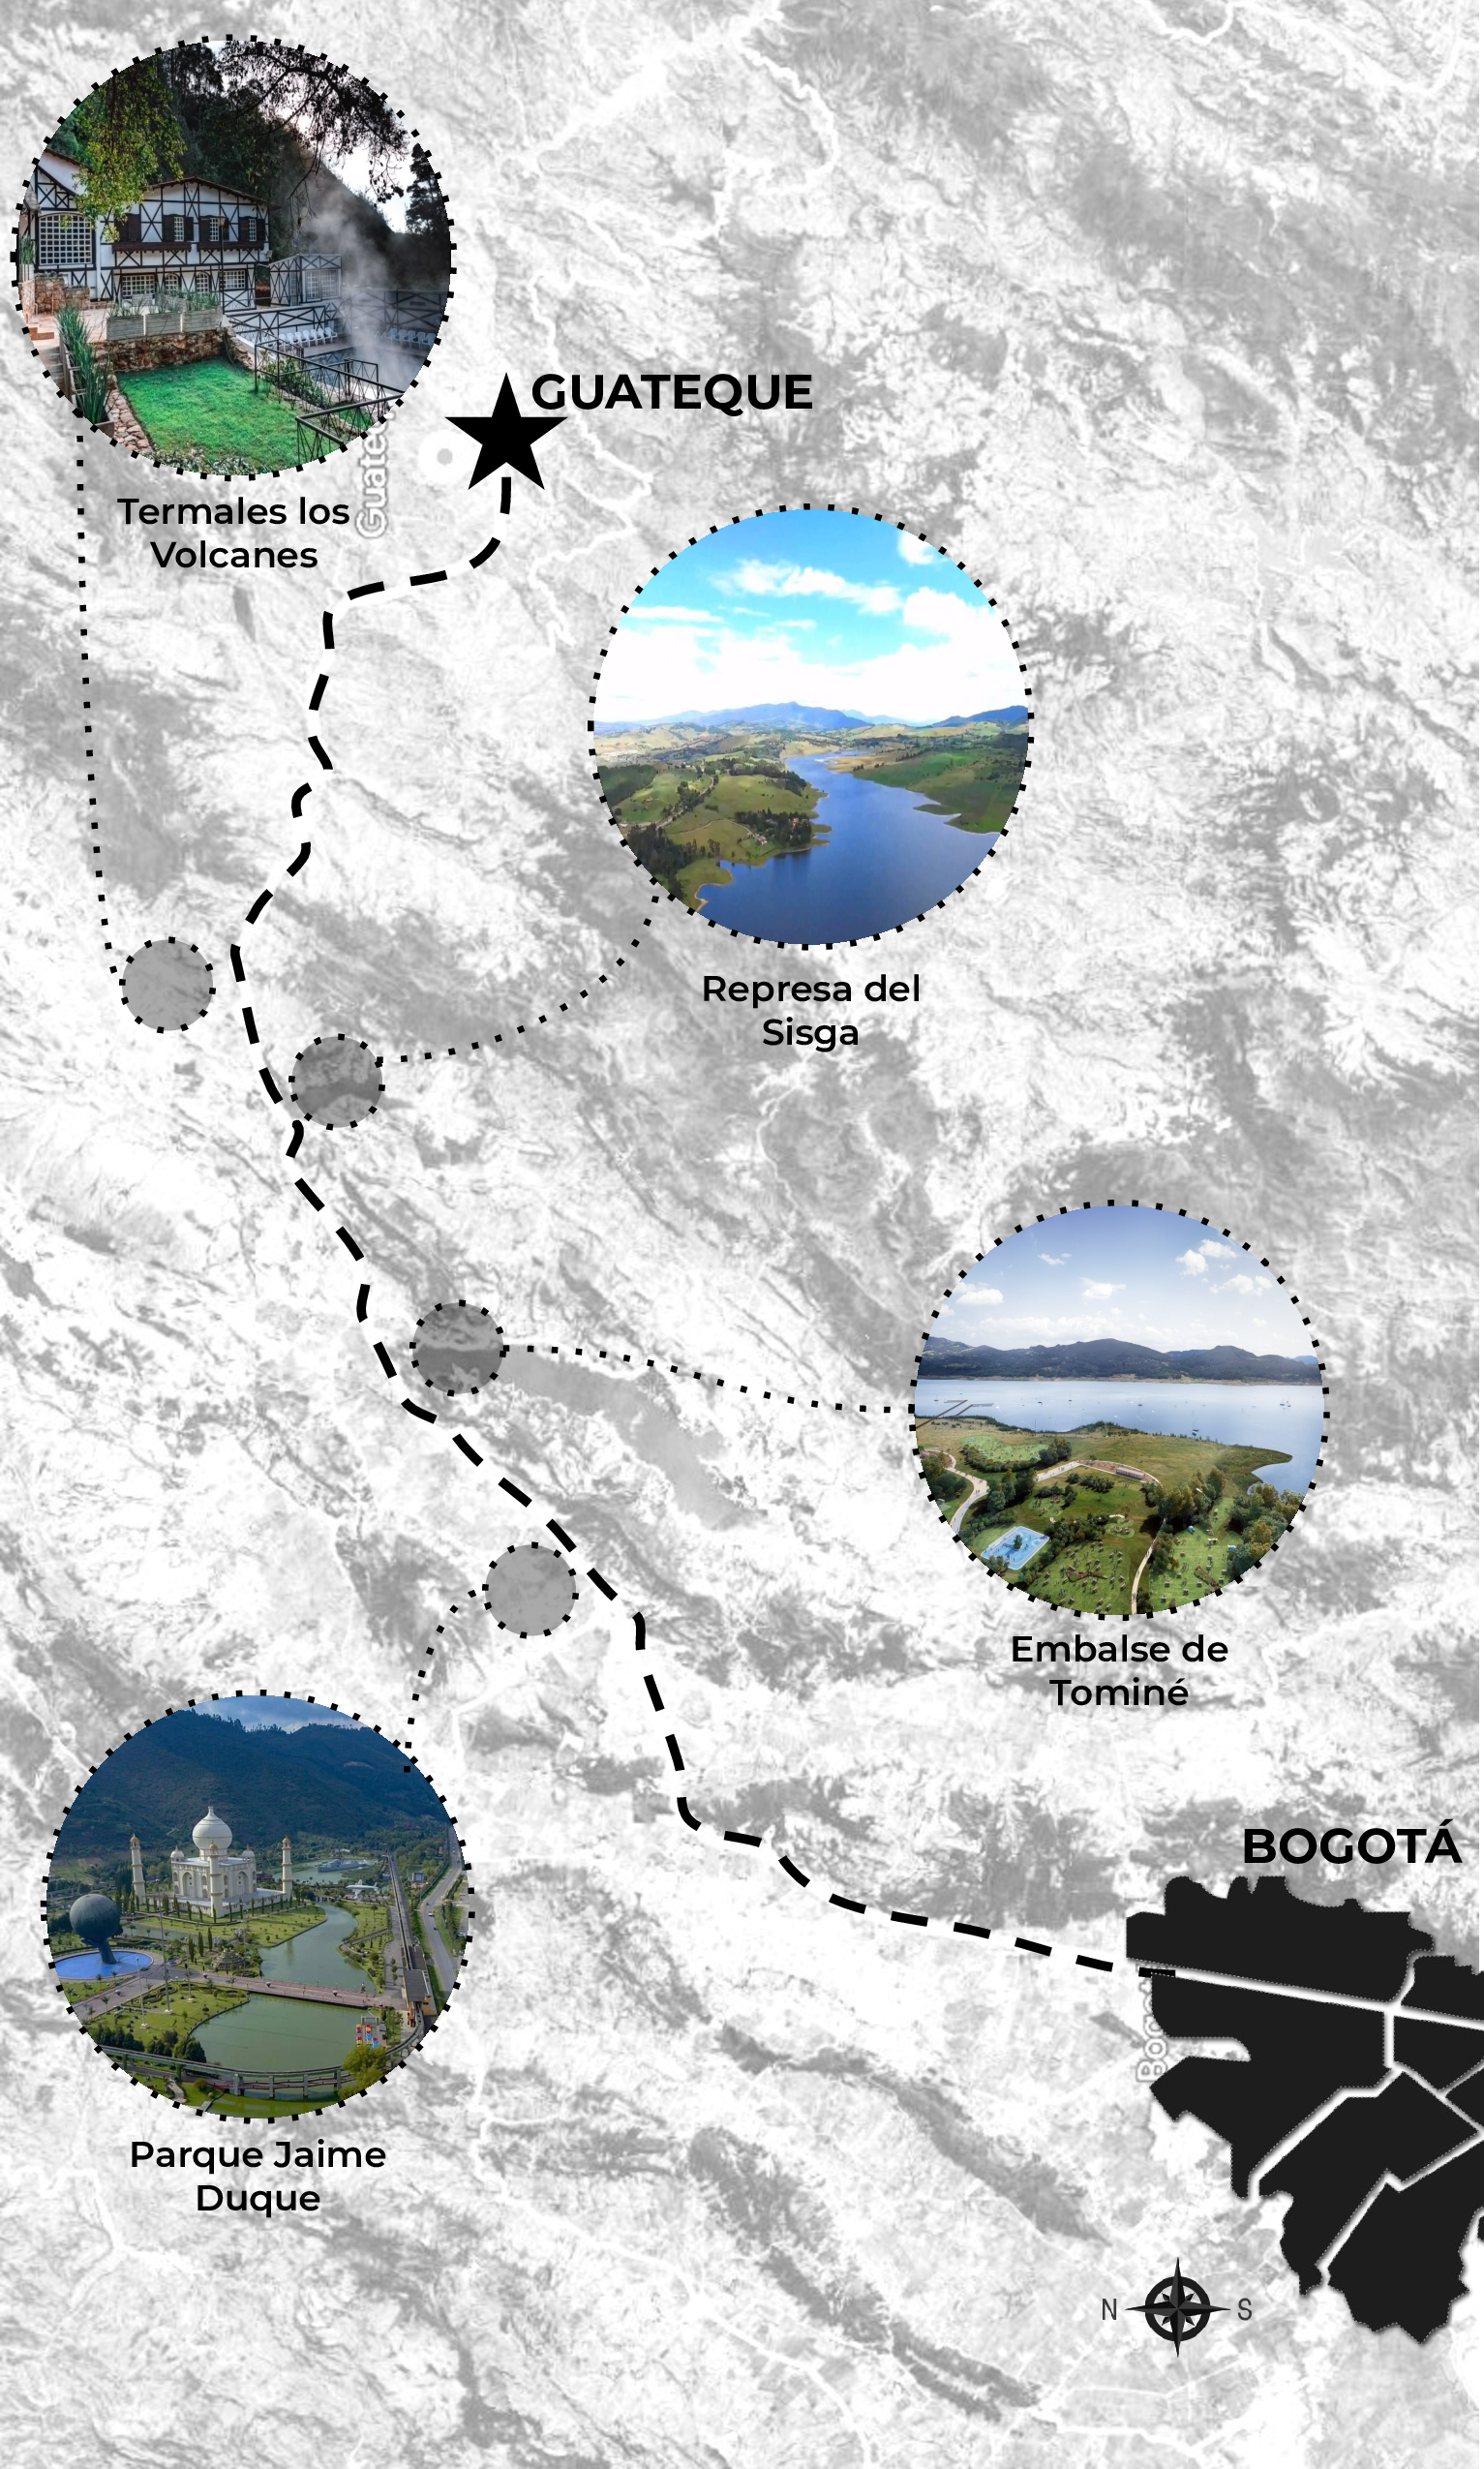 Mapa Bogotá - Guateque con sitios turísticos en el camino